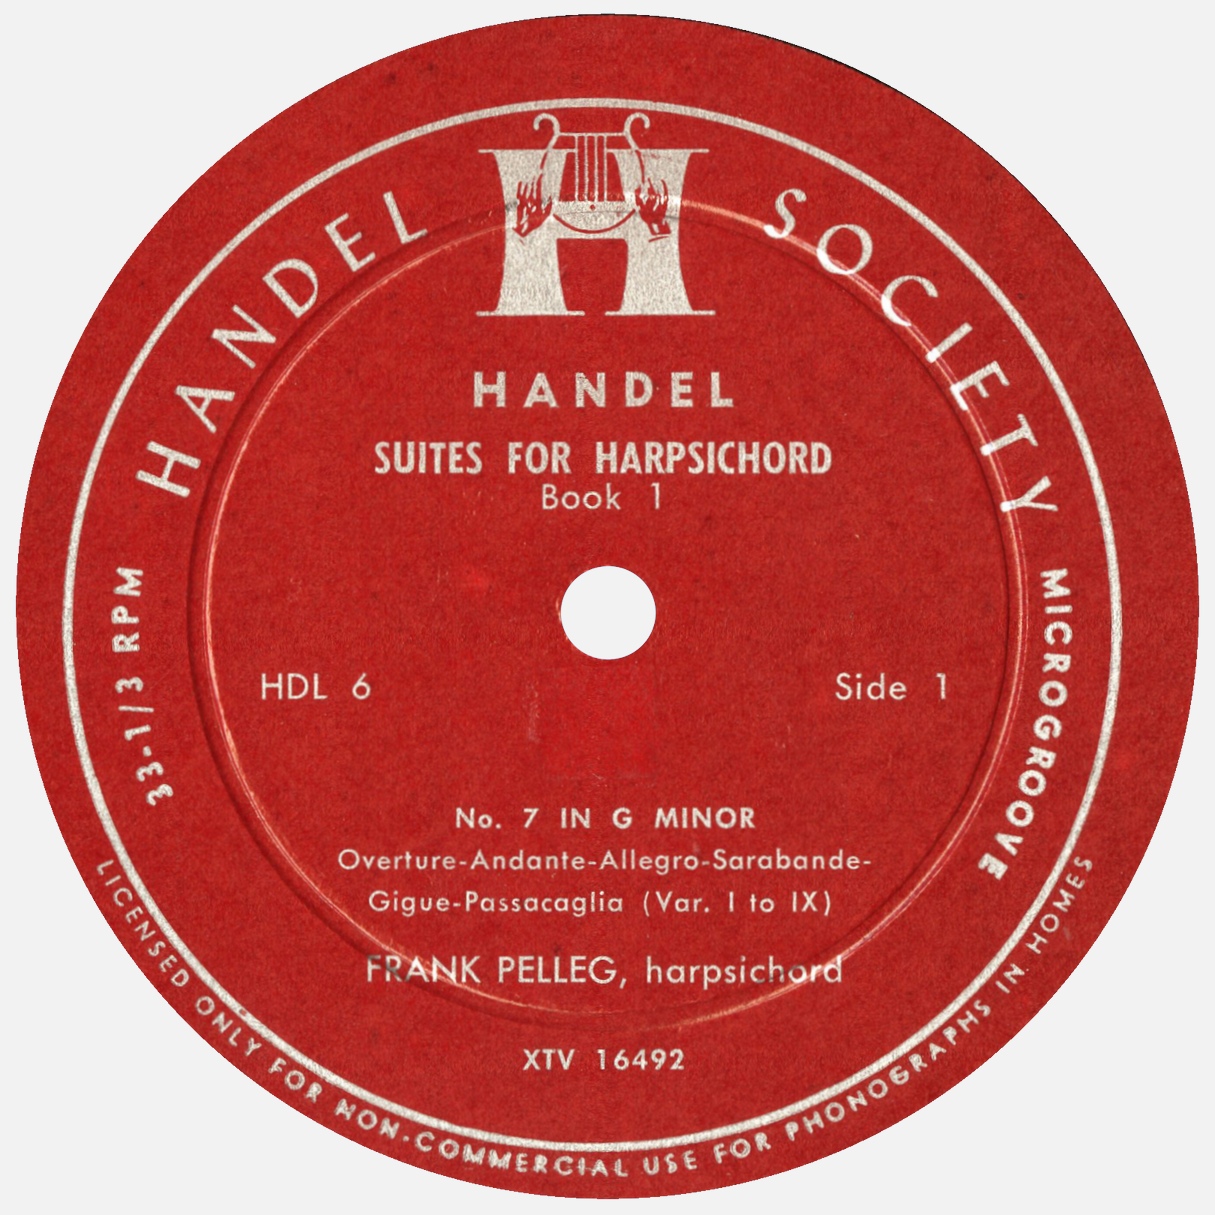 Étiquette recto du disque Handel Society HDL 6